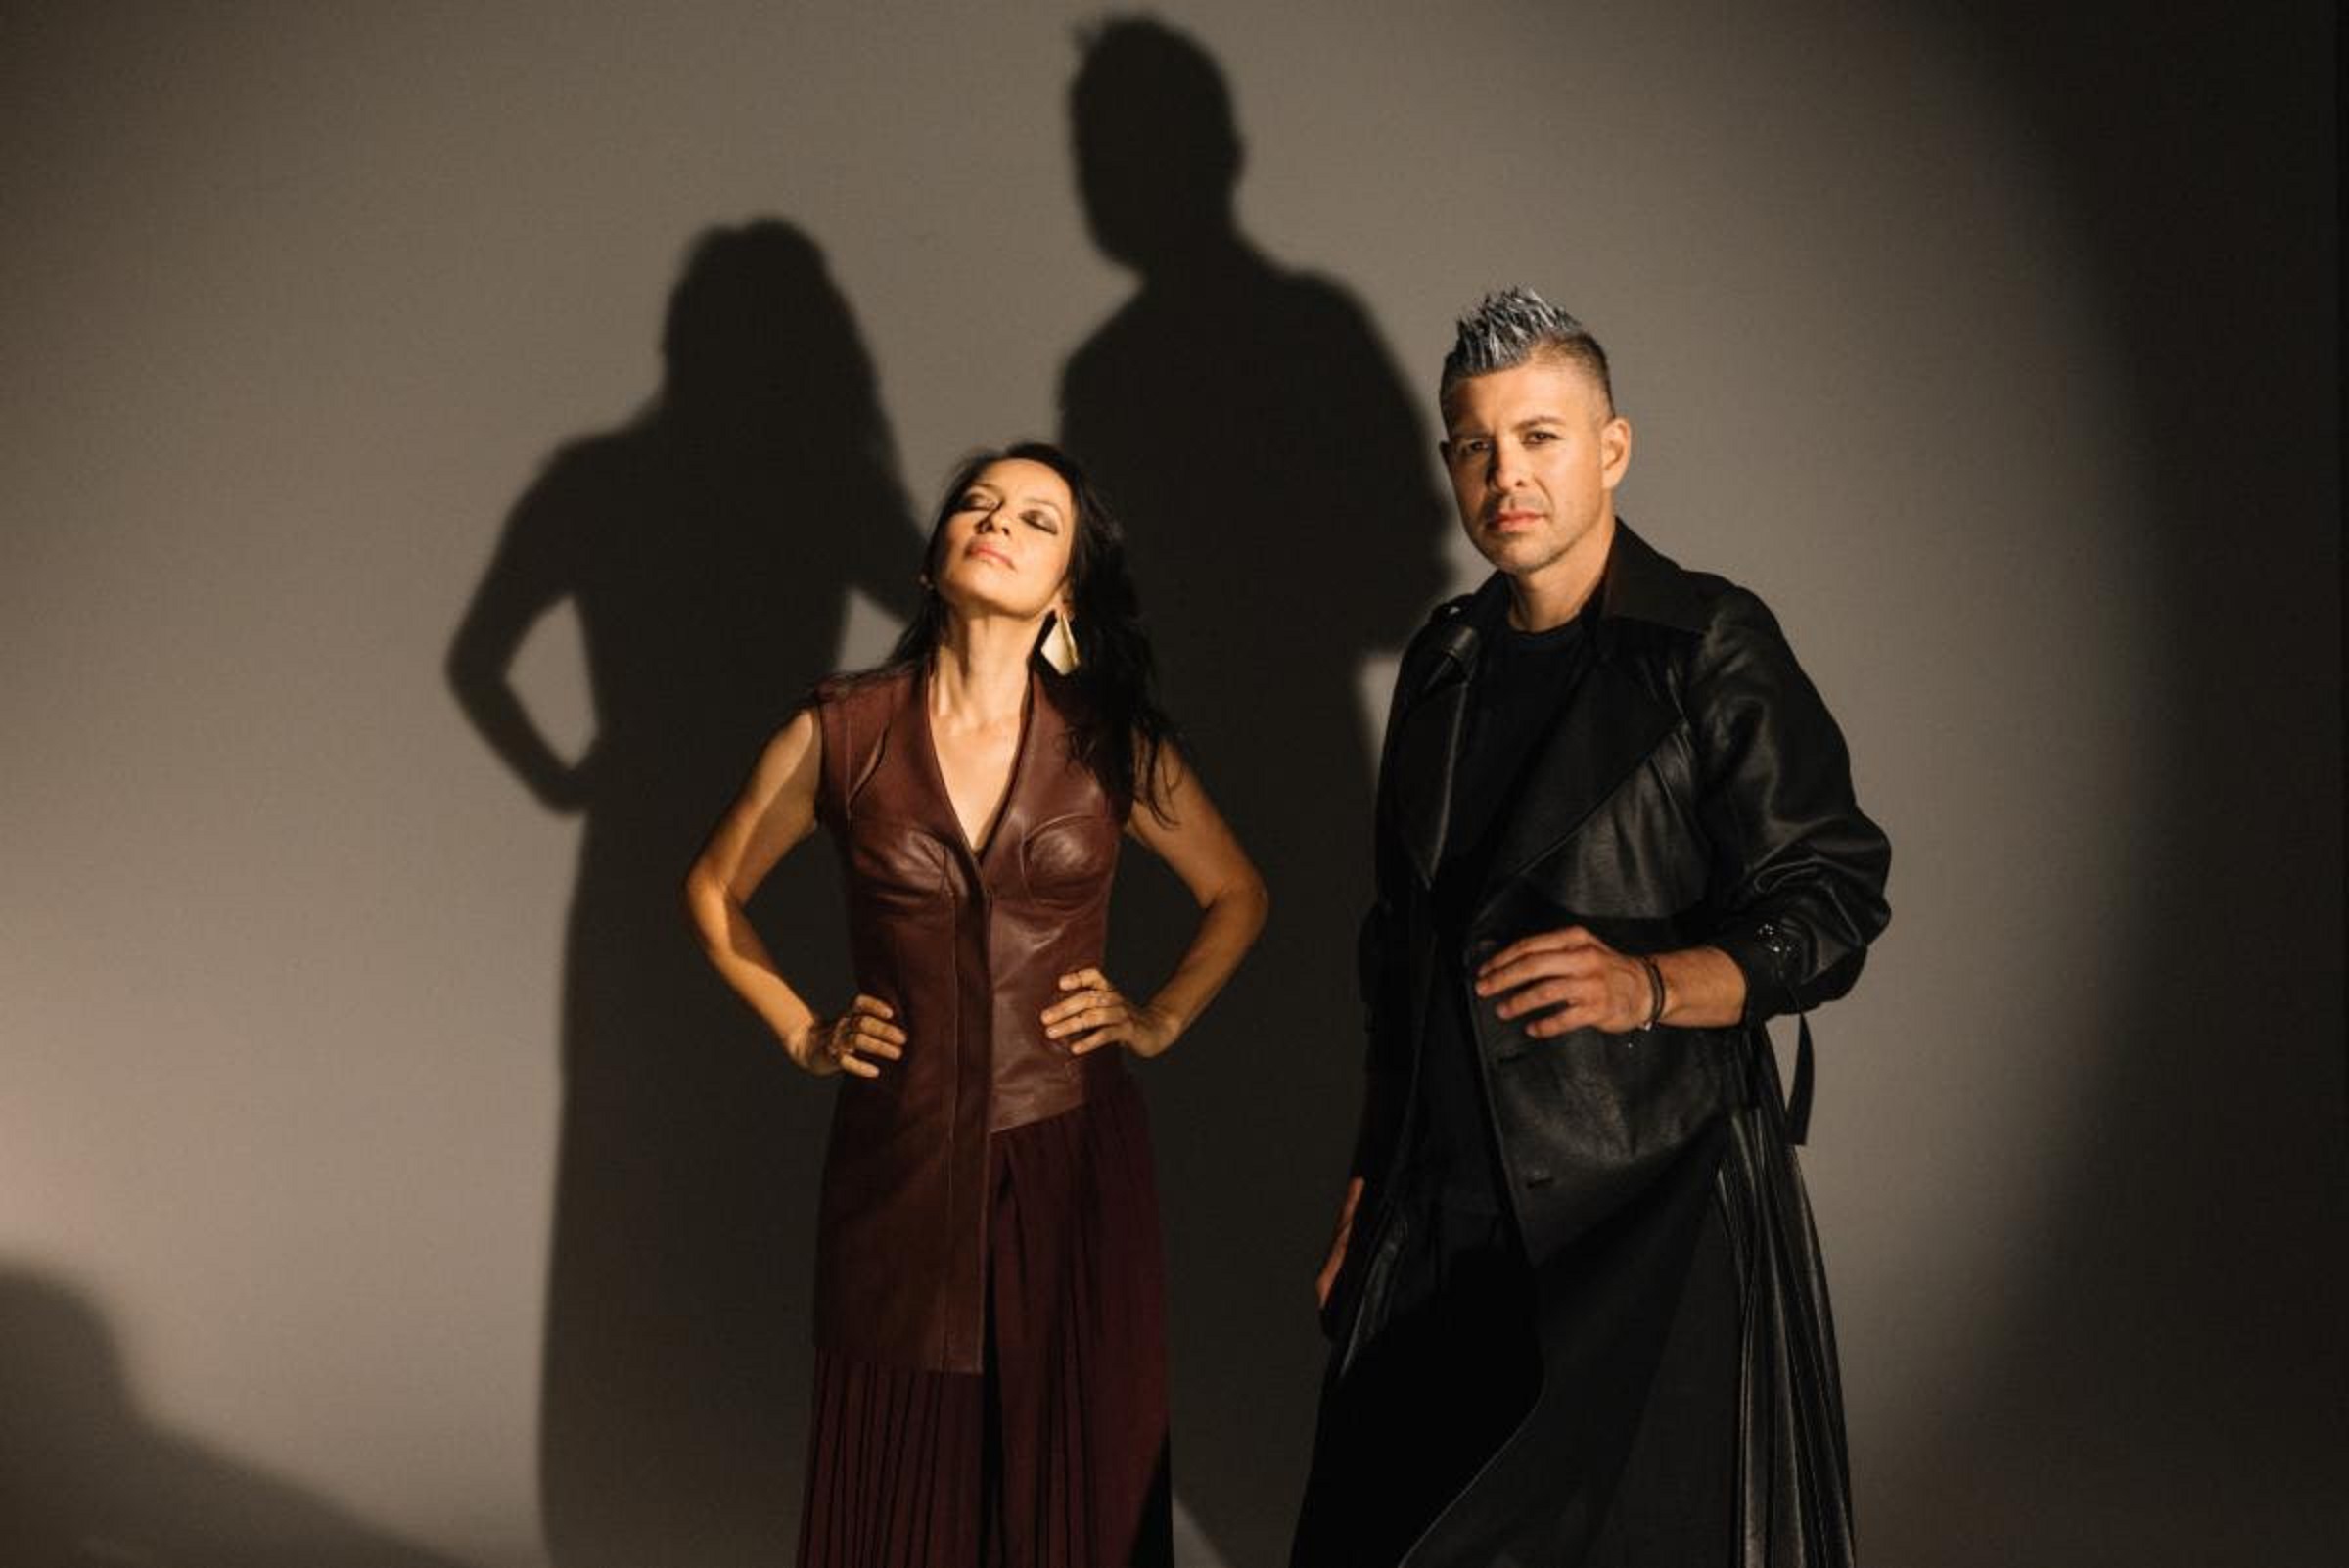 Rodrigo y Gabriela share new single, "Egoland"; new album out April 21